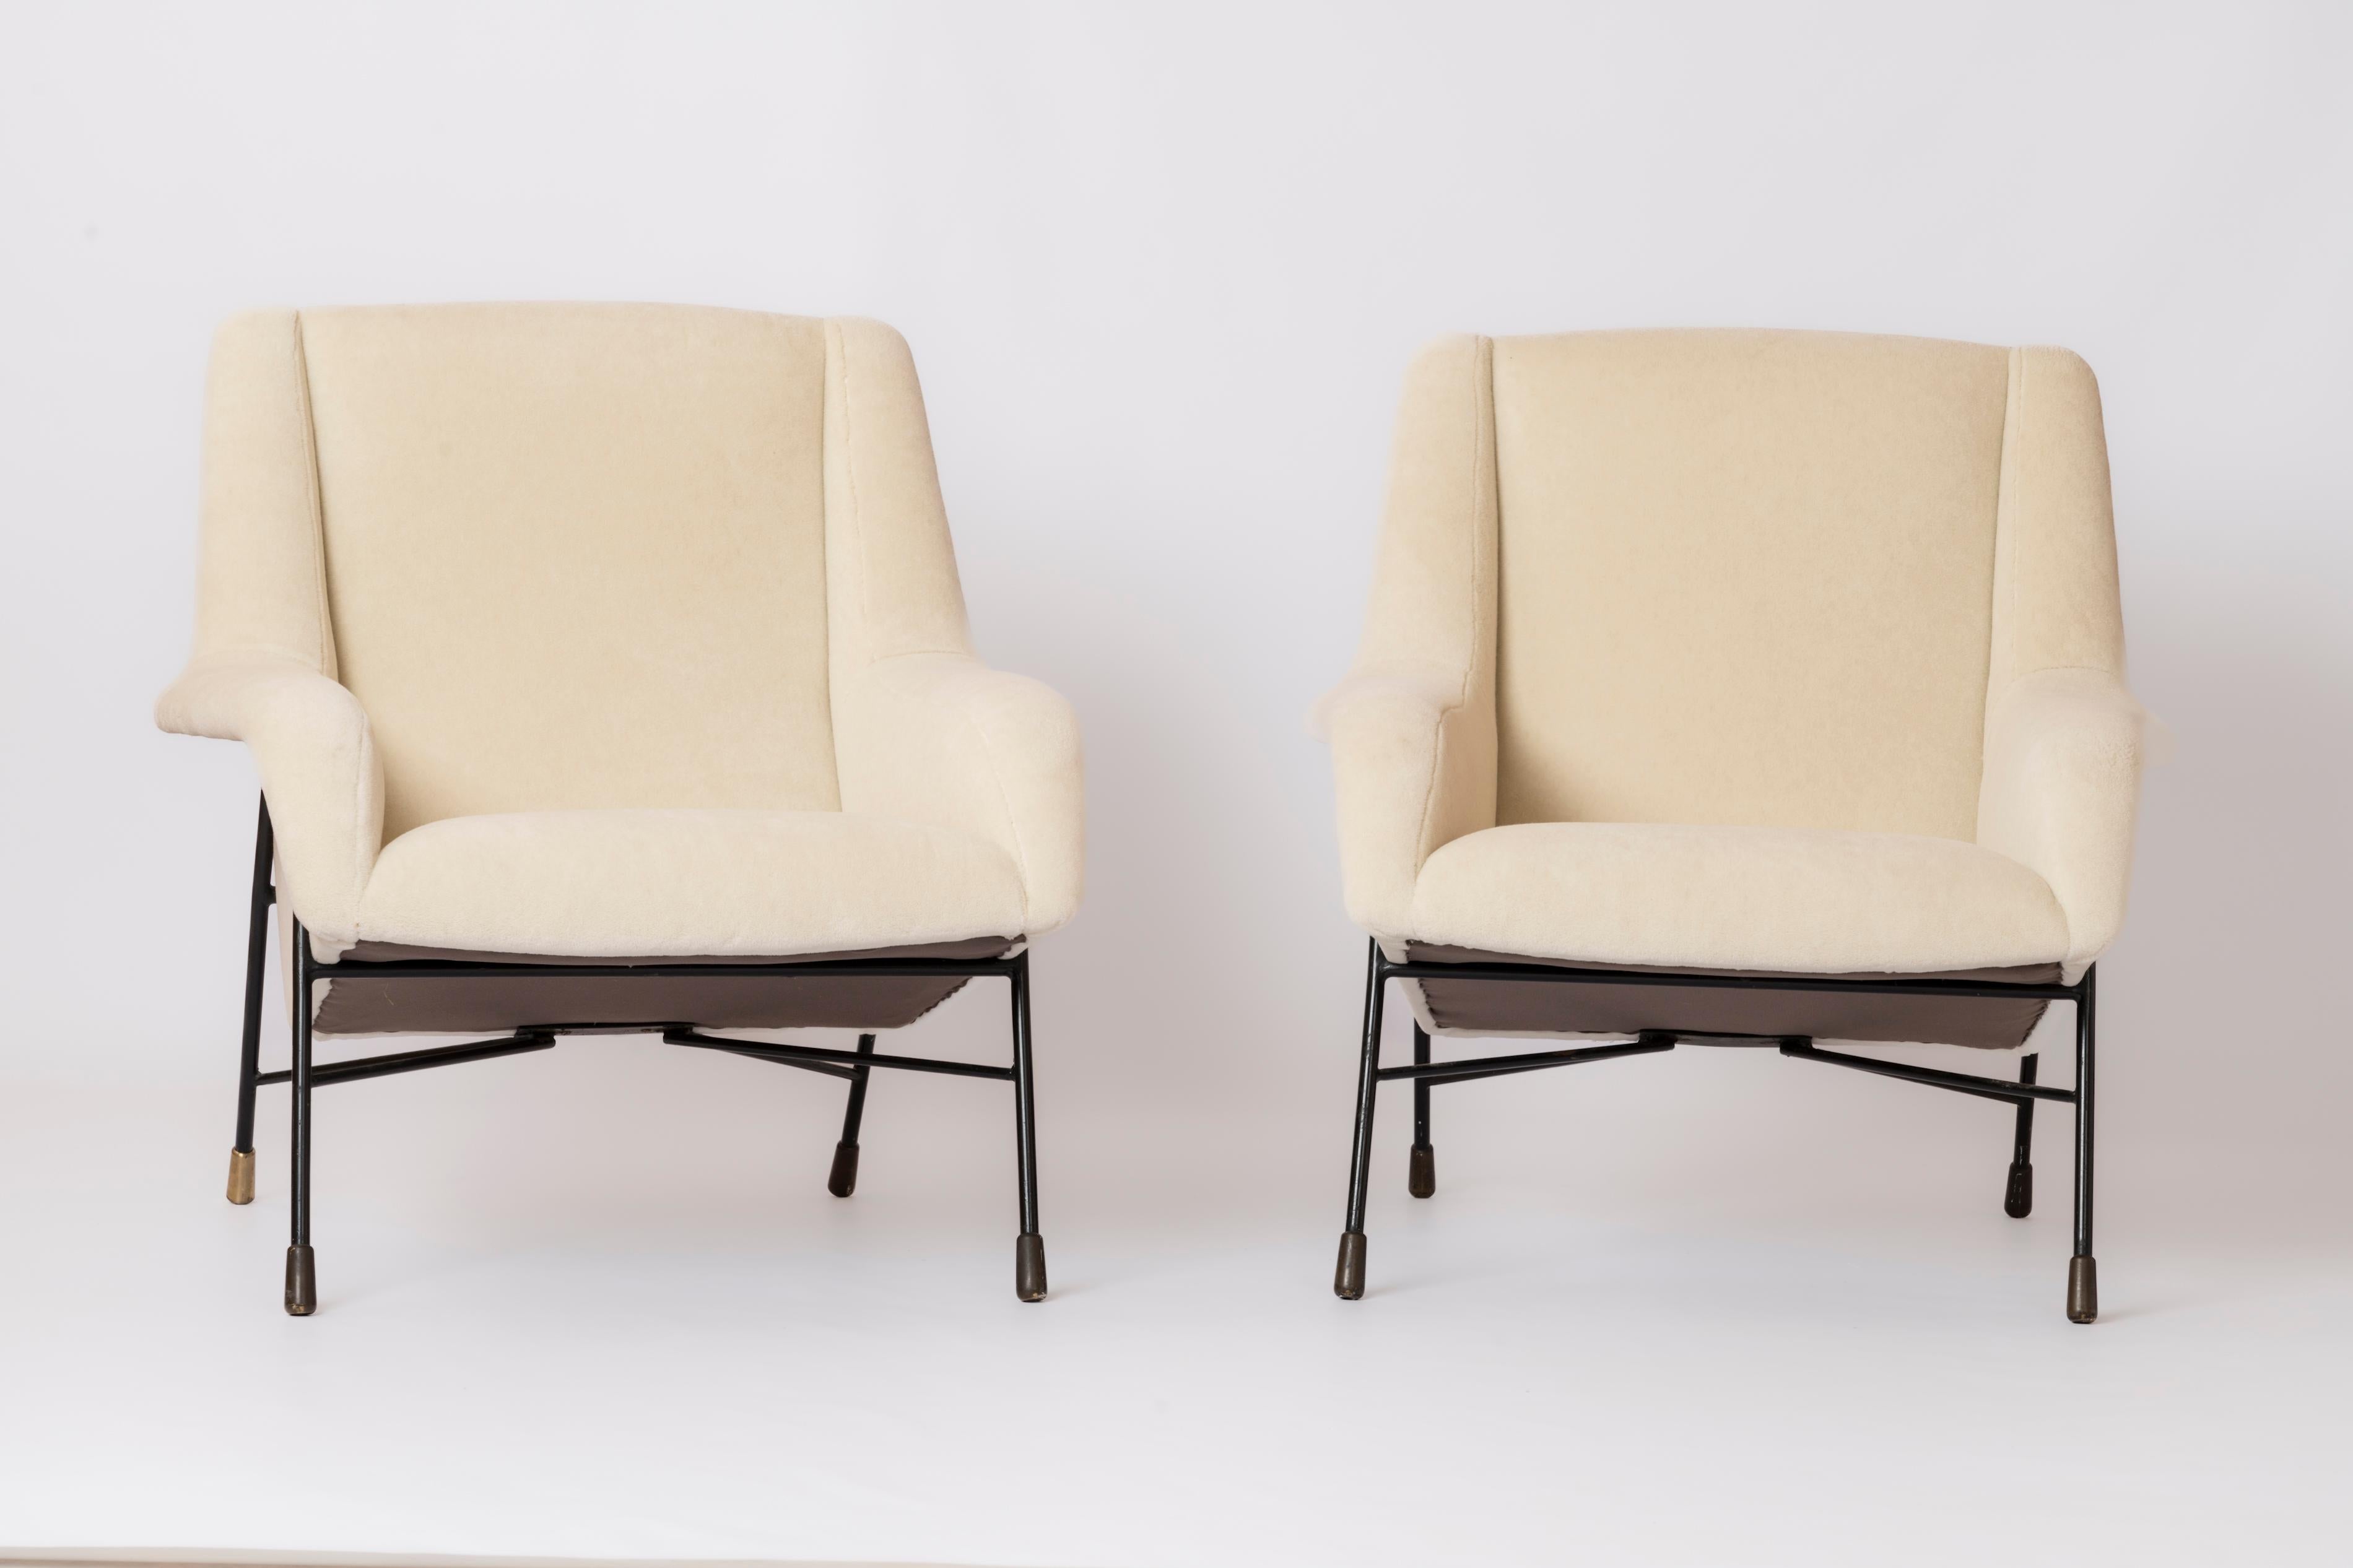 Seltenes Paar Loungesessel von dem bekannten belgischen Designer Alfred Hendrickx. Bei dem abgebildeten Modell handelt es sich nachweislich um das Modell S12, das von Belform, Belgien, in den späten 1950er Jahren hergestellt wurde.
Frisch